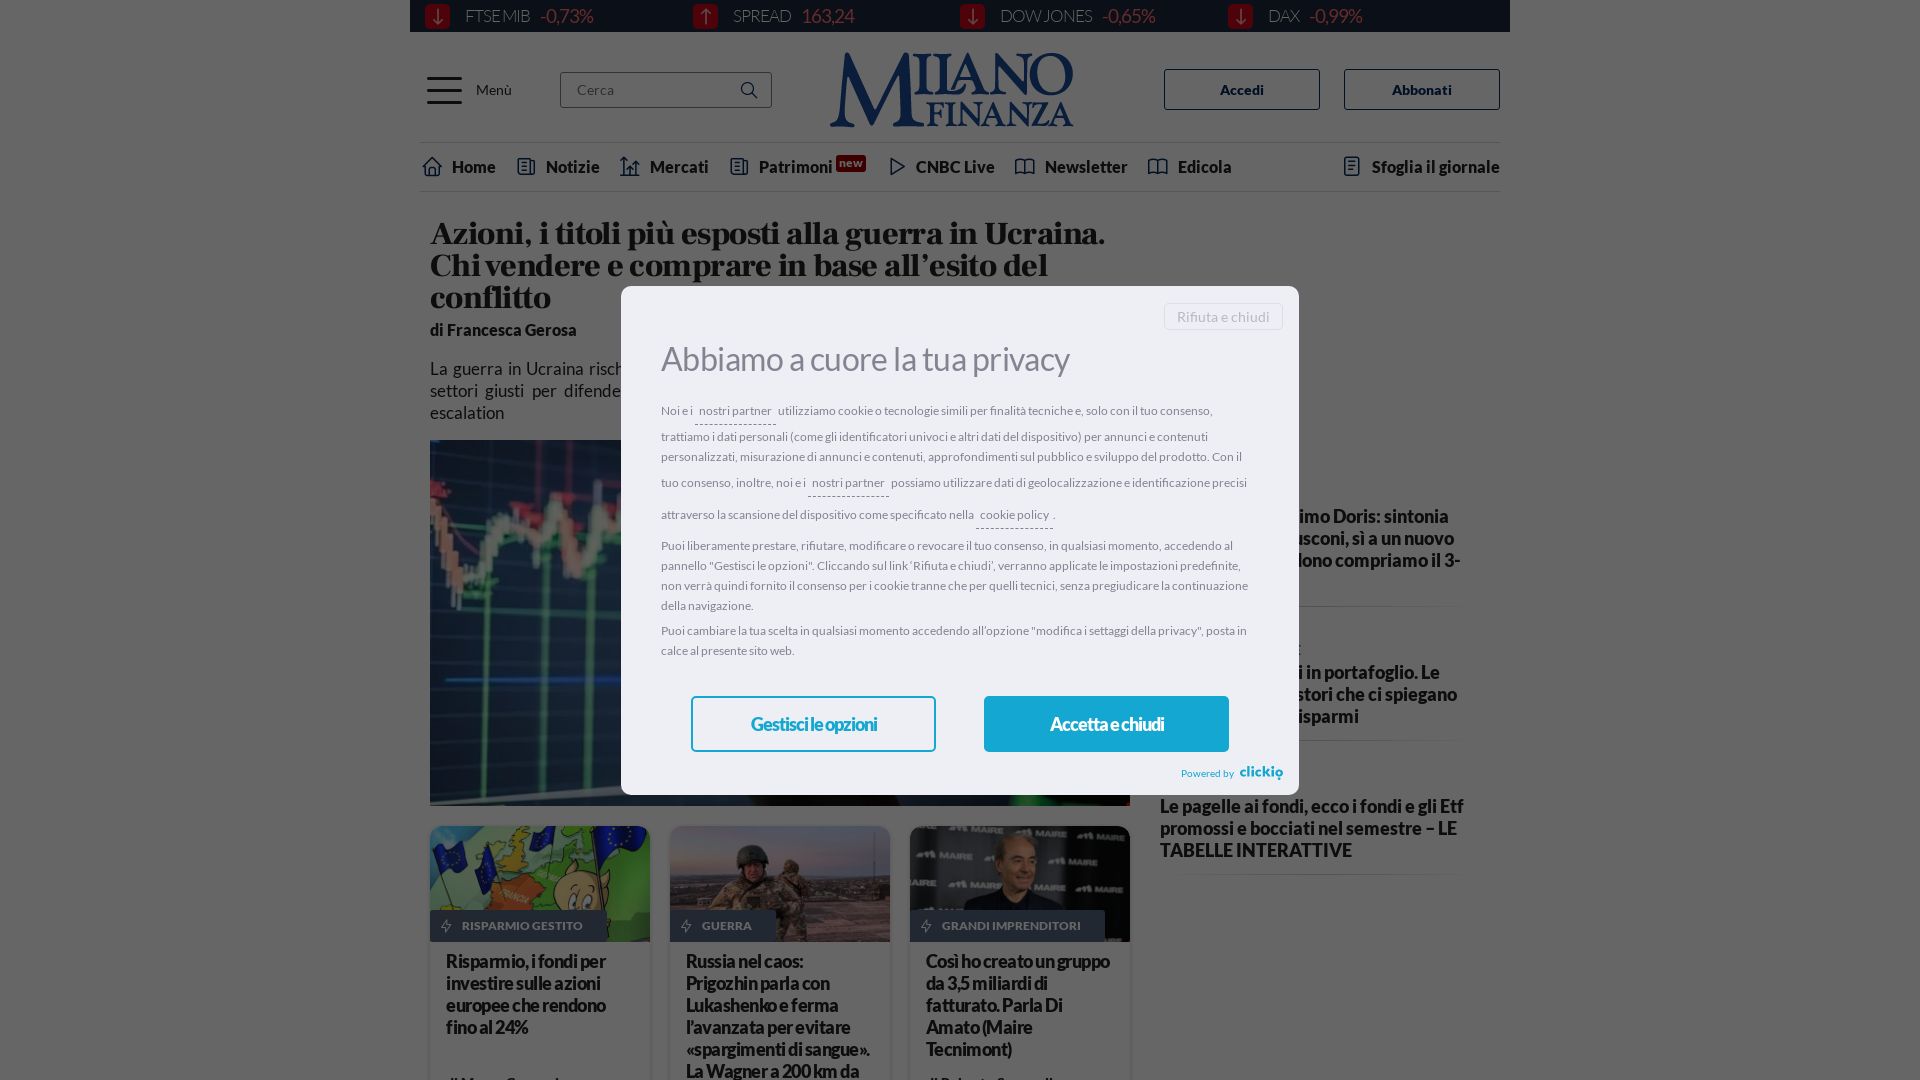 网站状态 milanofinanza.it 是  在线的